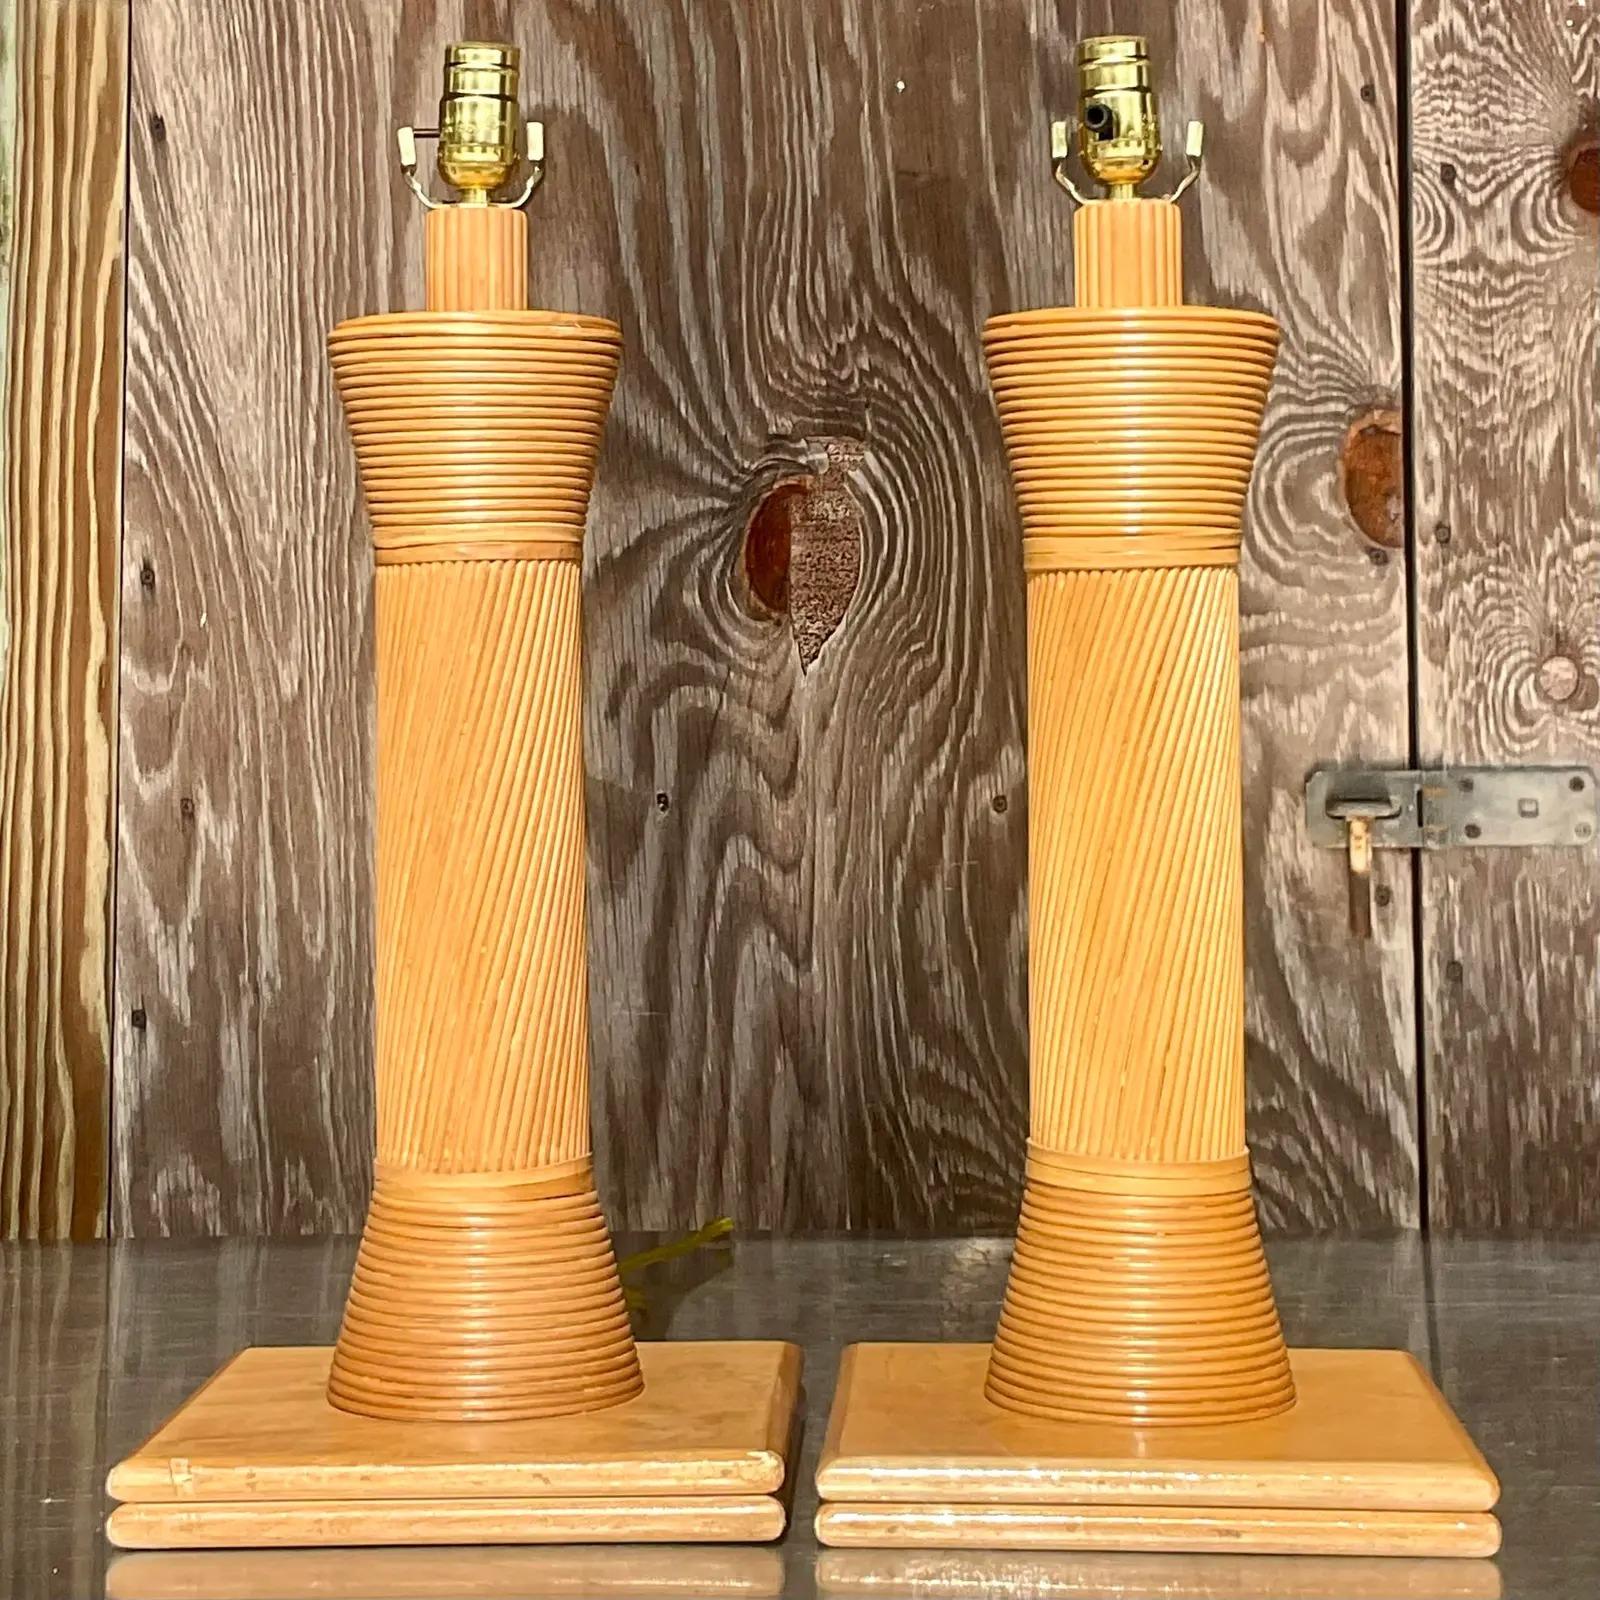 Une paire spectaculaire de lampes de table Vintage By. Magnifique roseau en forme de crayon dans un design multidirectionnel chic. Ils reposent sur des socles en bois. Acquis d'une propriété de Palm Beach.